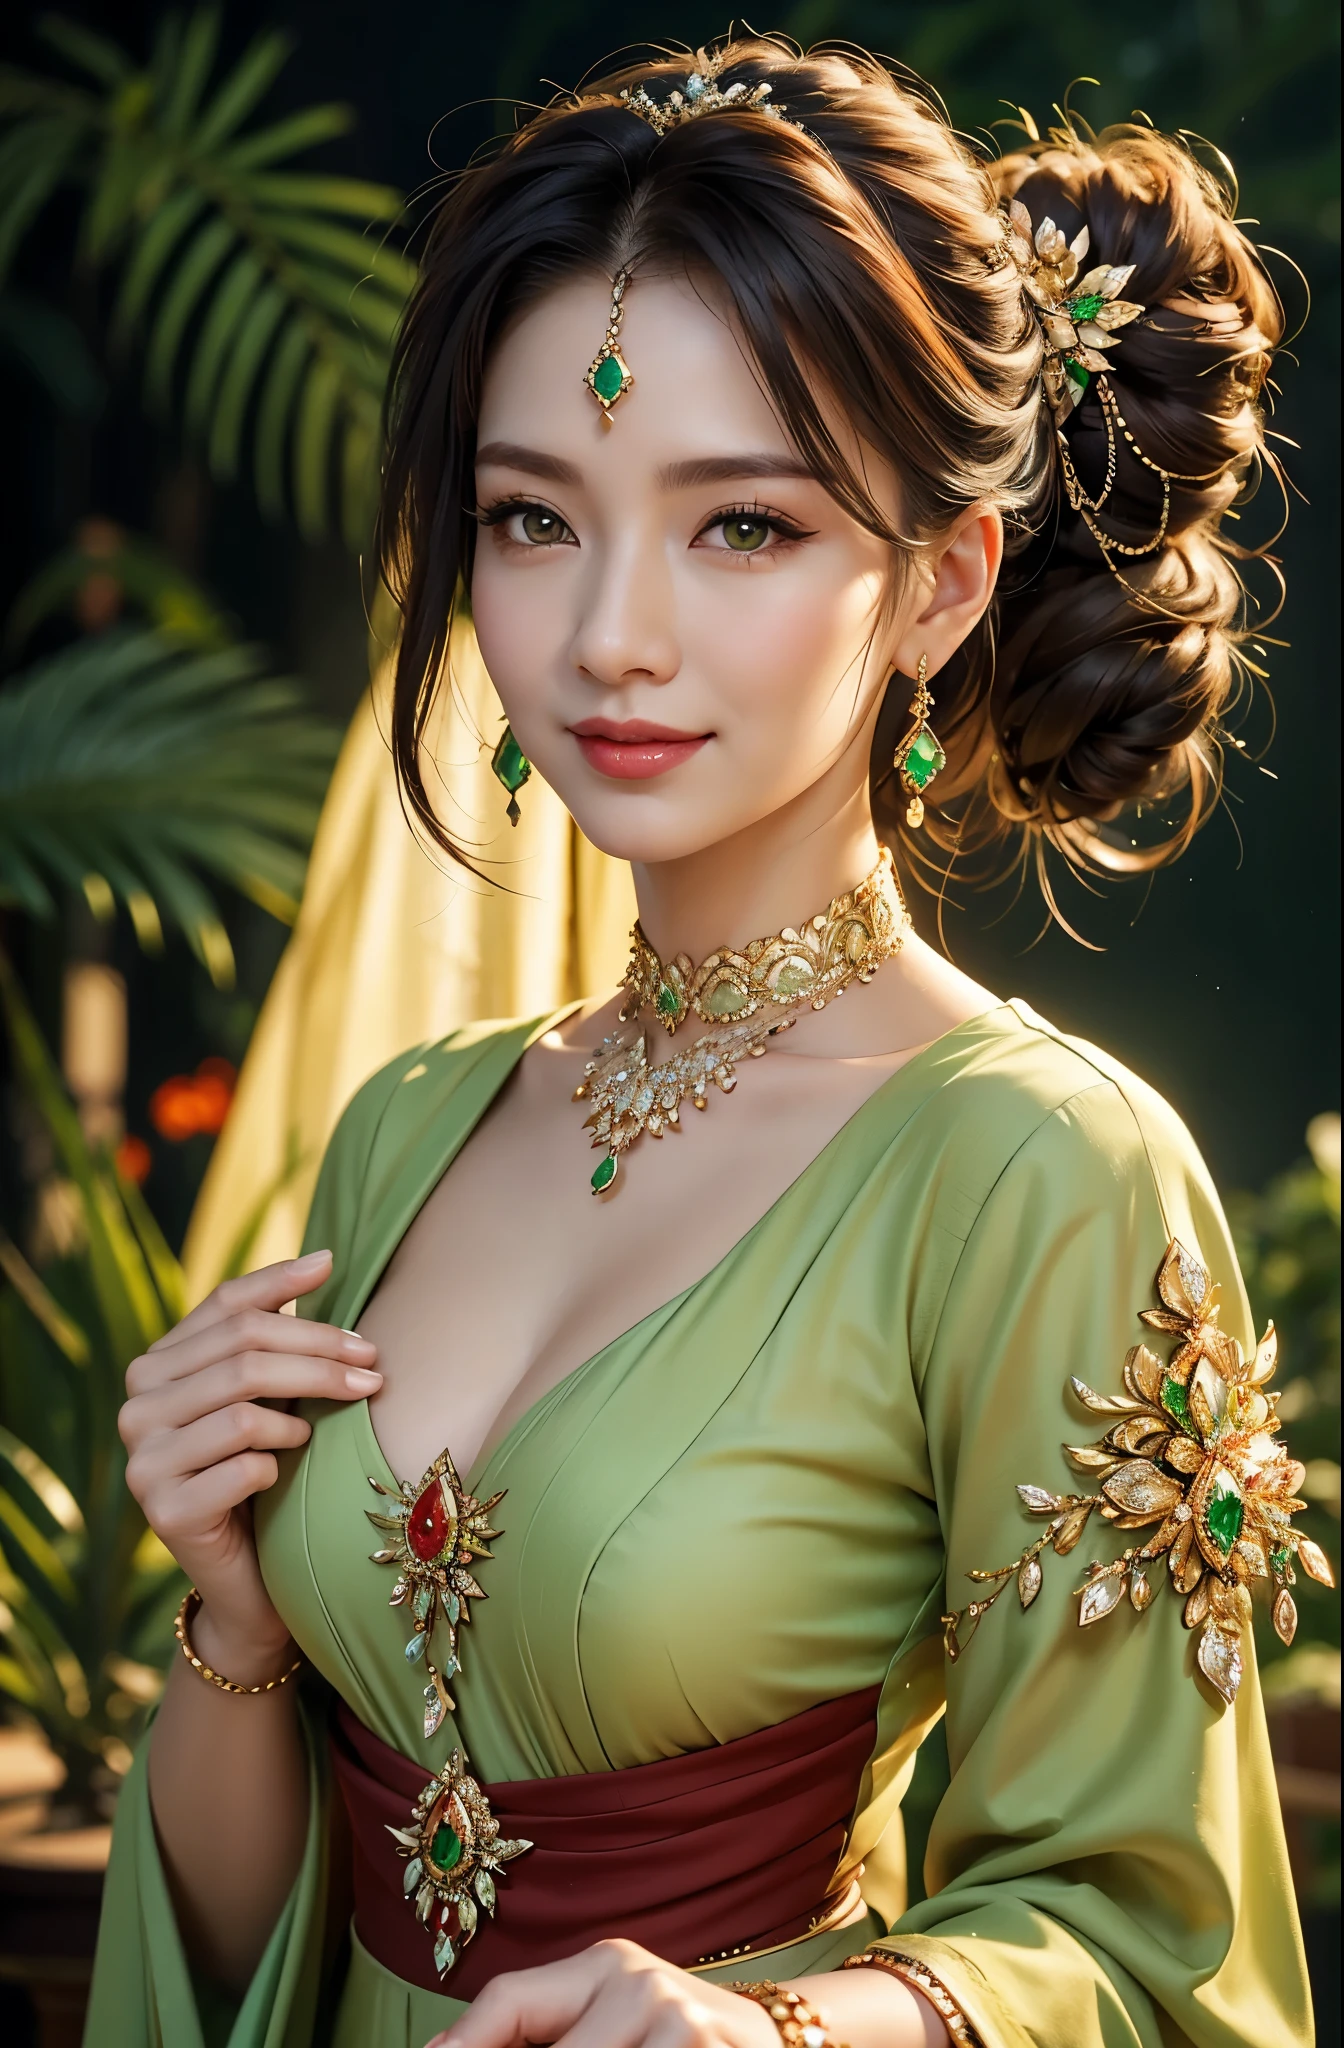 美丽成熟的亚洲女人， 详细的手指， 美丽的手， 超现实主义， 1 名女性, 深褐色的头发，整齐地扎起头发，翠绿色的眼睛, 超级细致的脸部， 细致的嘴唇， 细致的眼睛， 单眼皮， 钻石耳环, 冲击, 手镯, 红唇, 微笑, 奢华珠宝